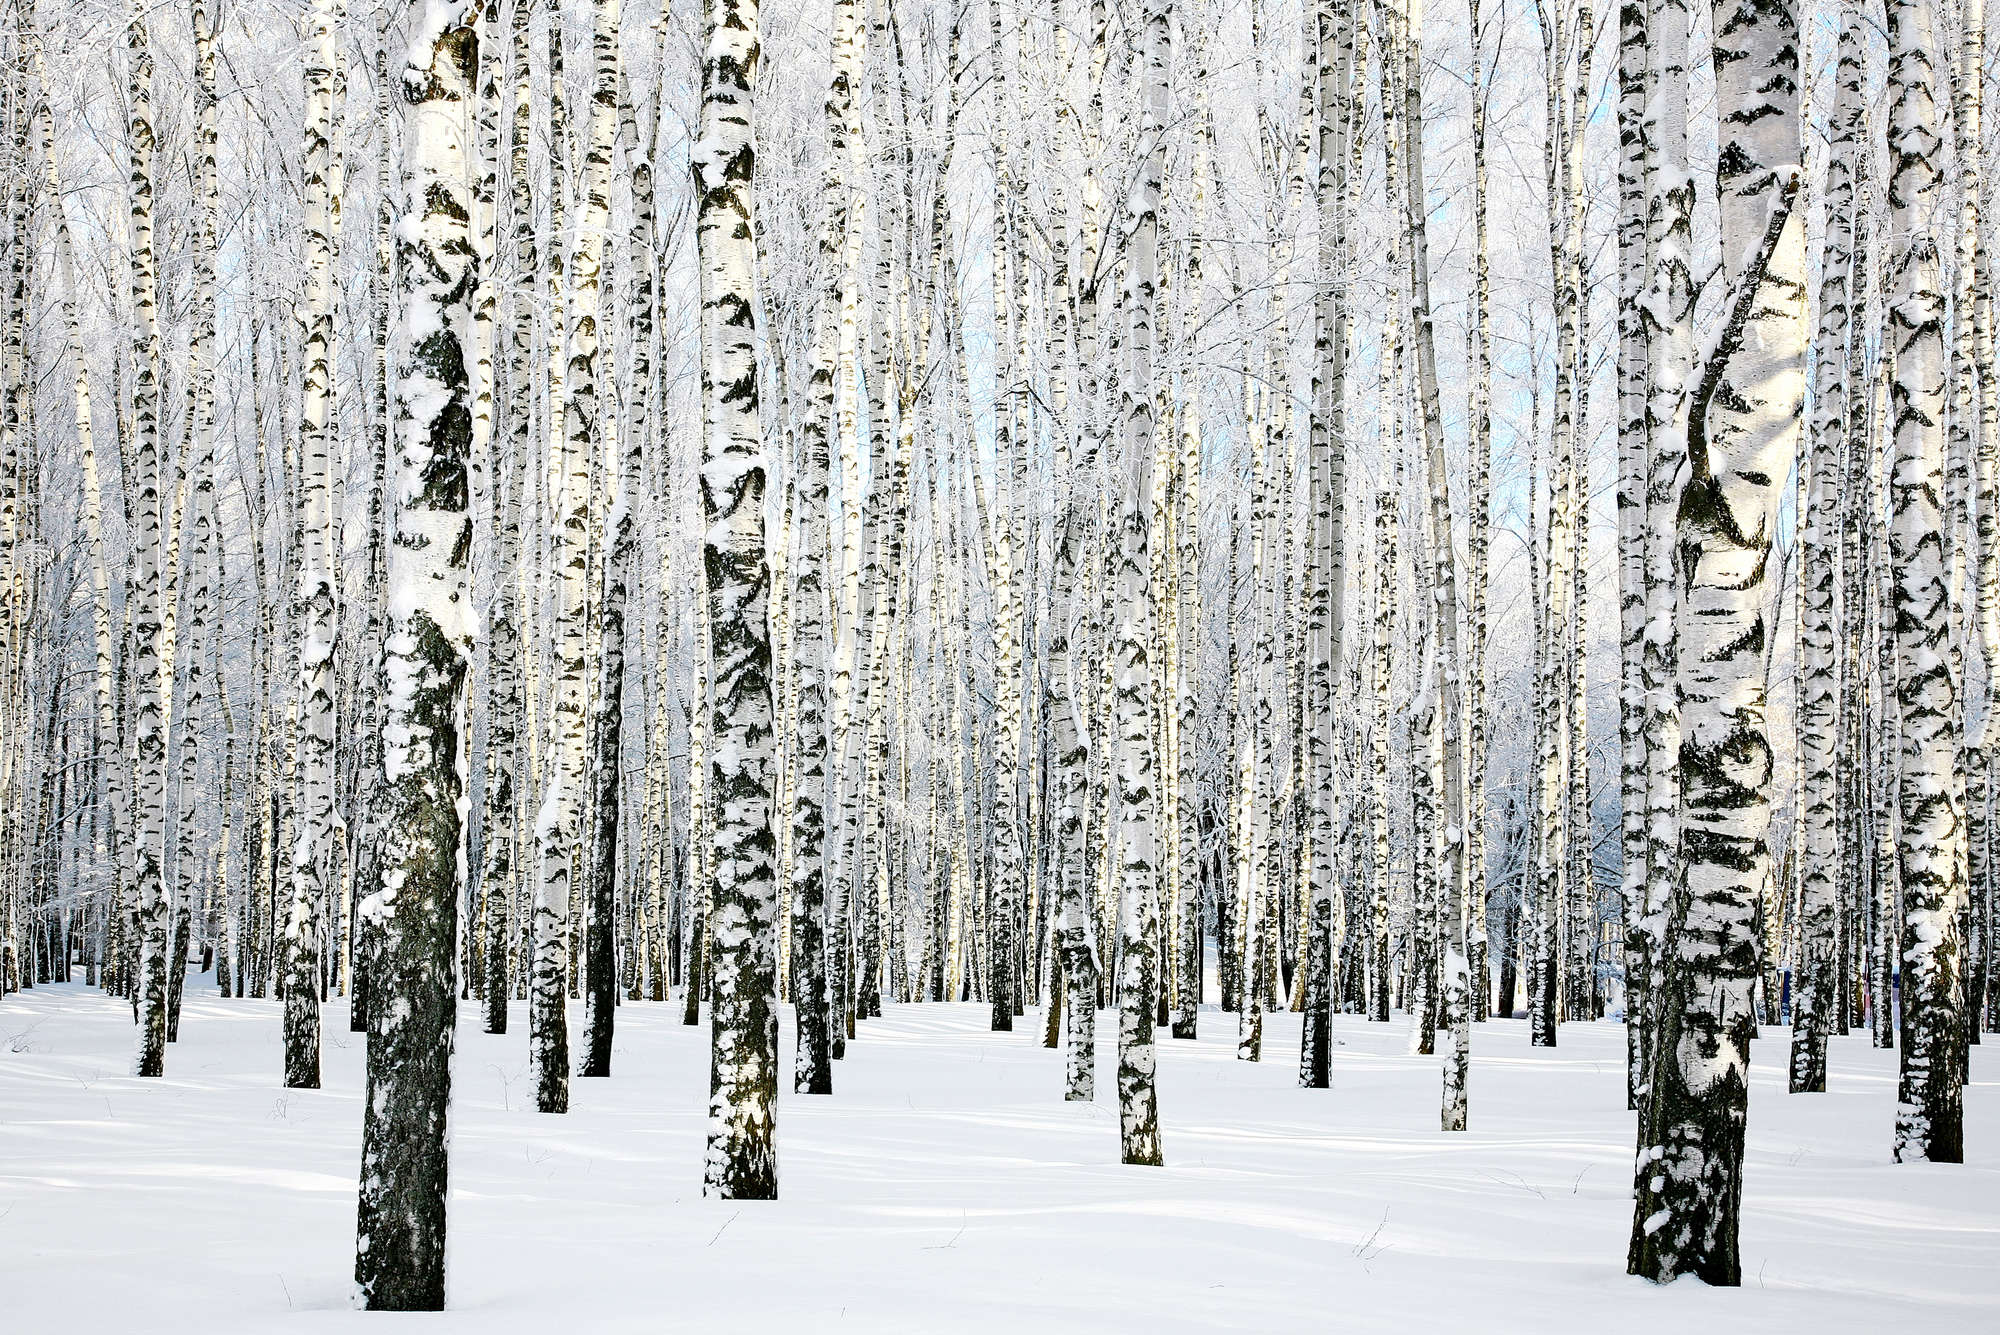             Natuurbehang berkenbos in de winter op structuurvlies
        